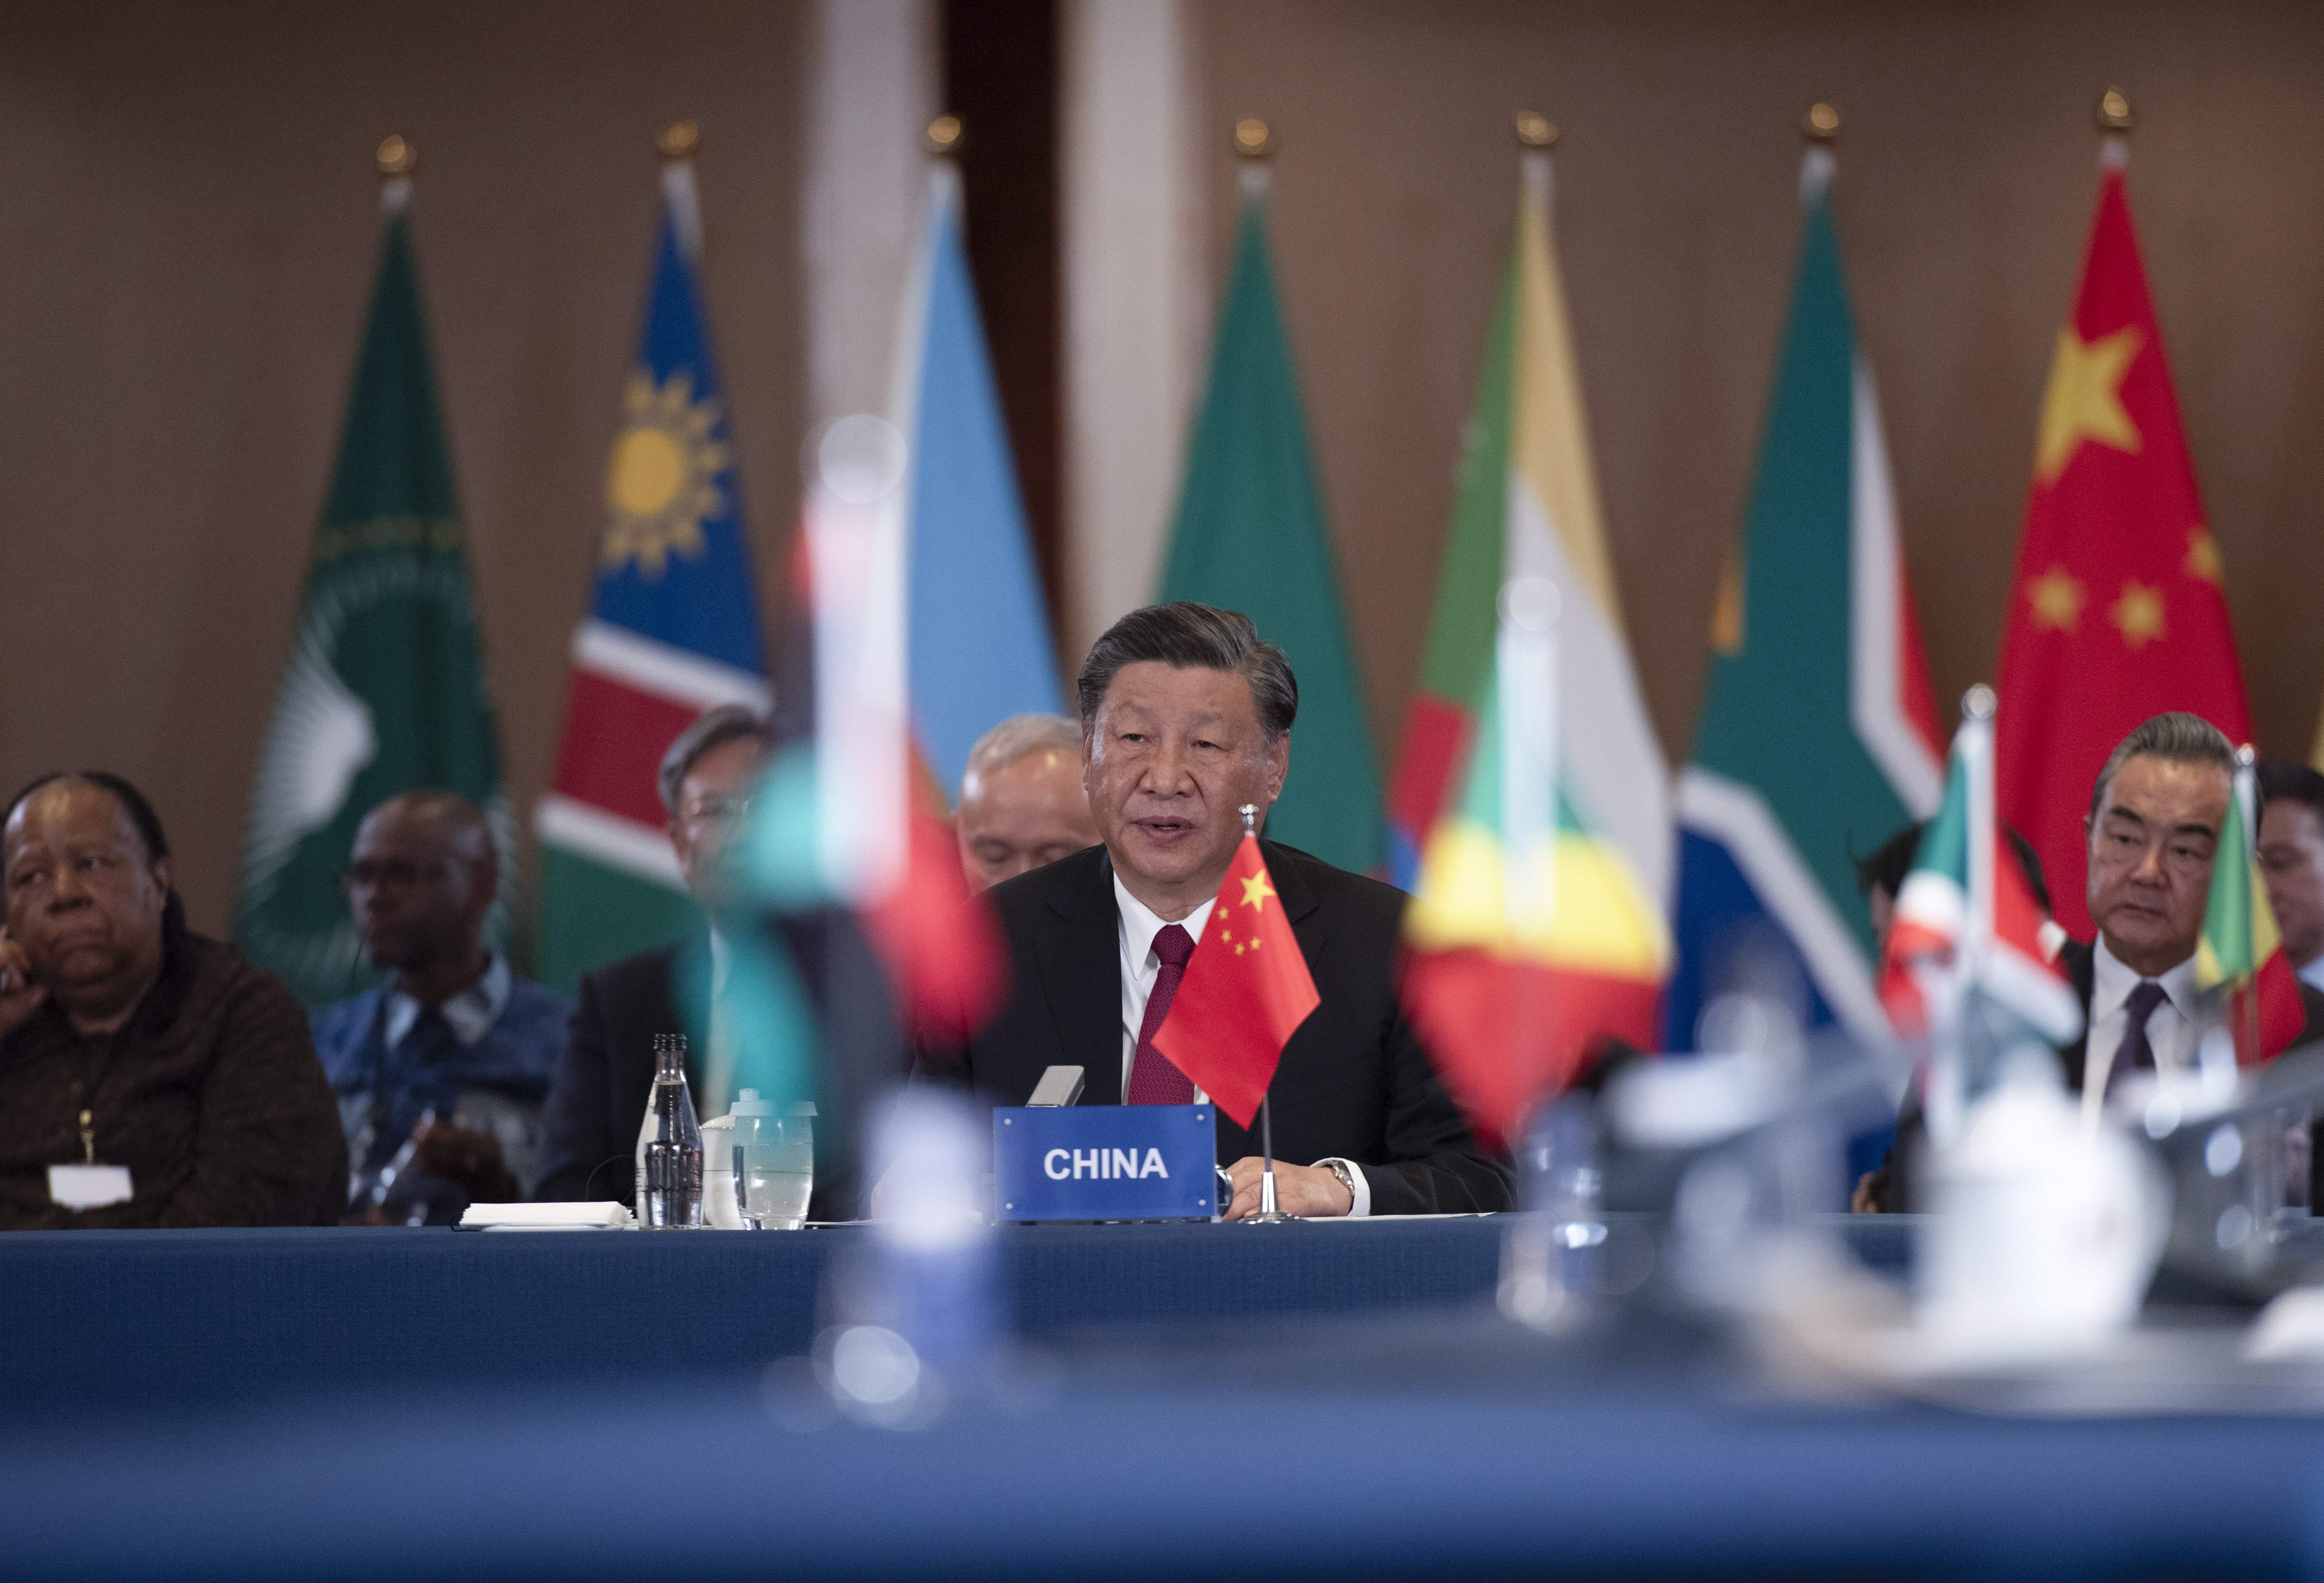 Ampliación de los BRICS: ¿qué implica para el orden mundial?